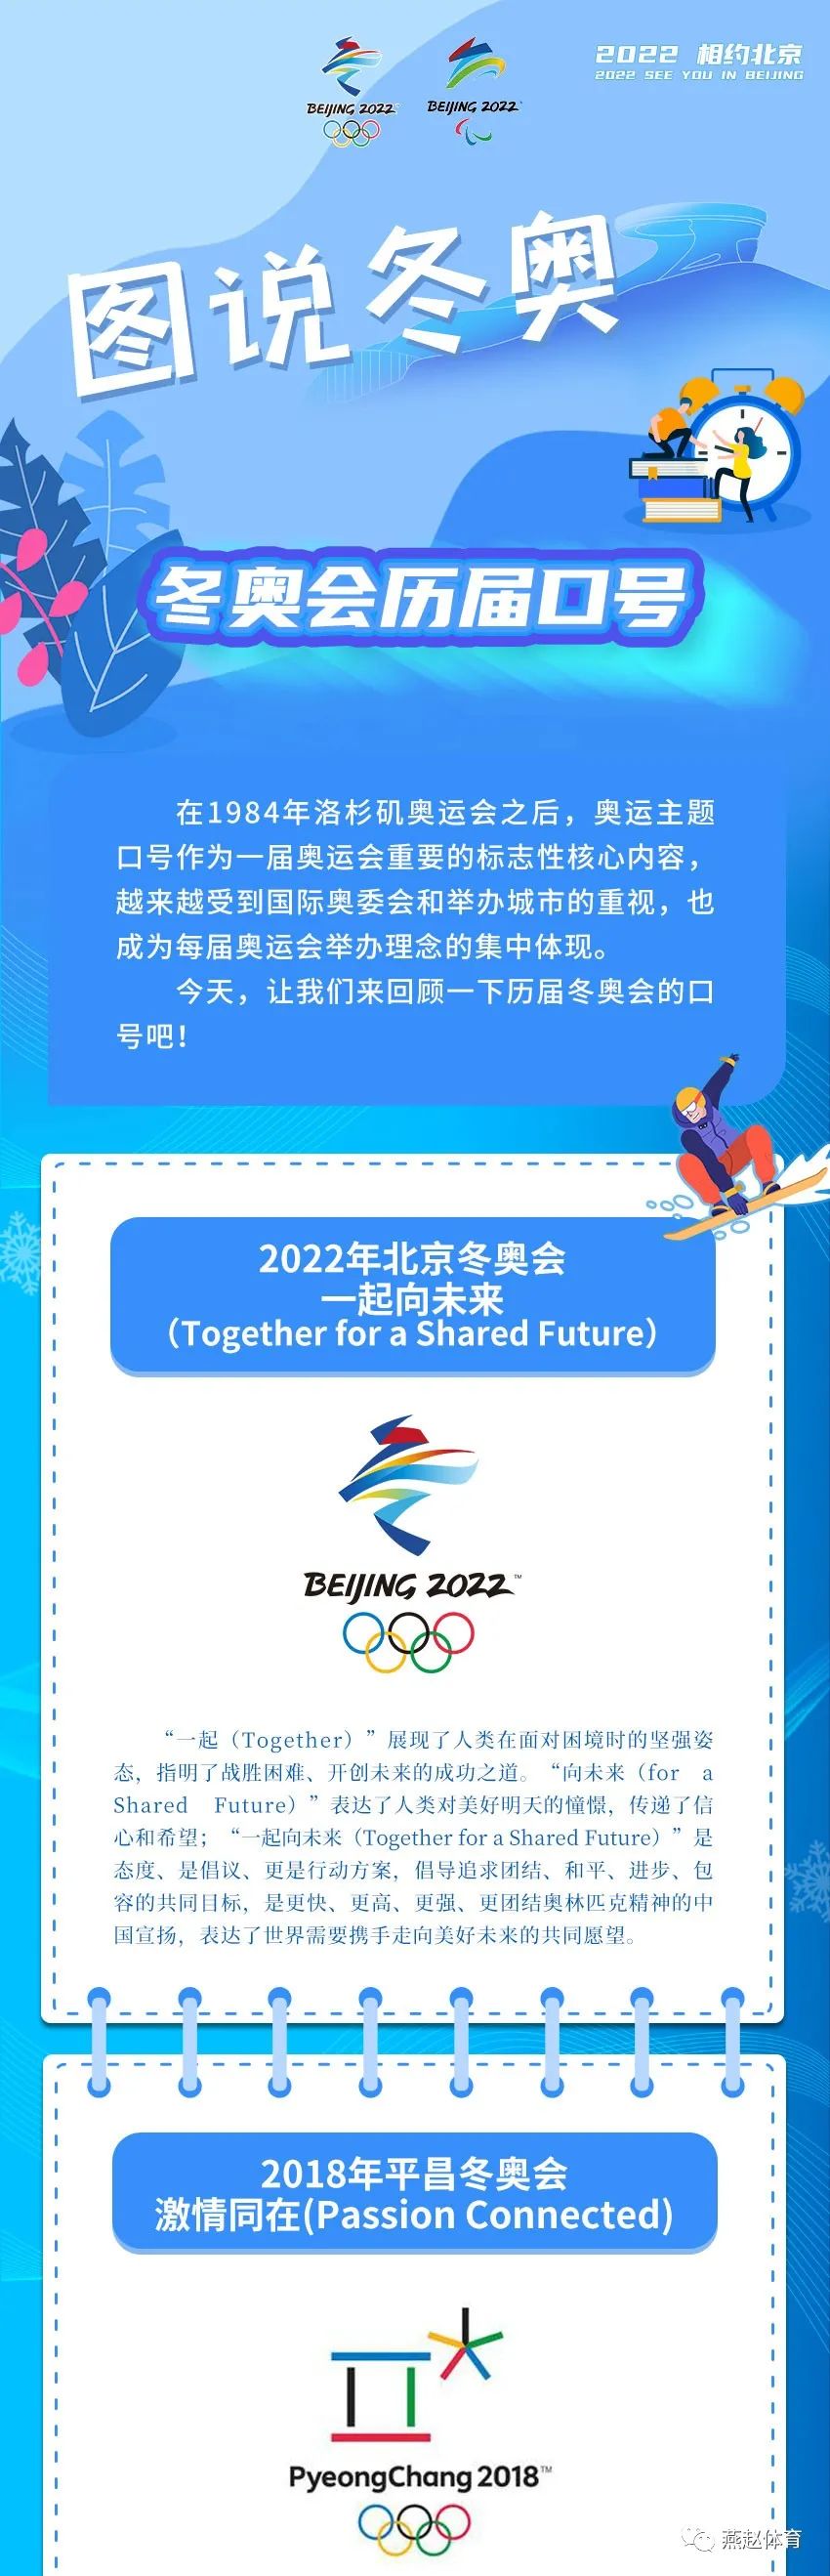 2022年亚运会在哪个城市举办_2022年全运会举办城市_2022年奥运会举办城市